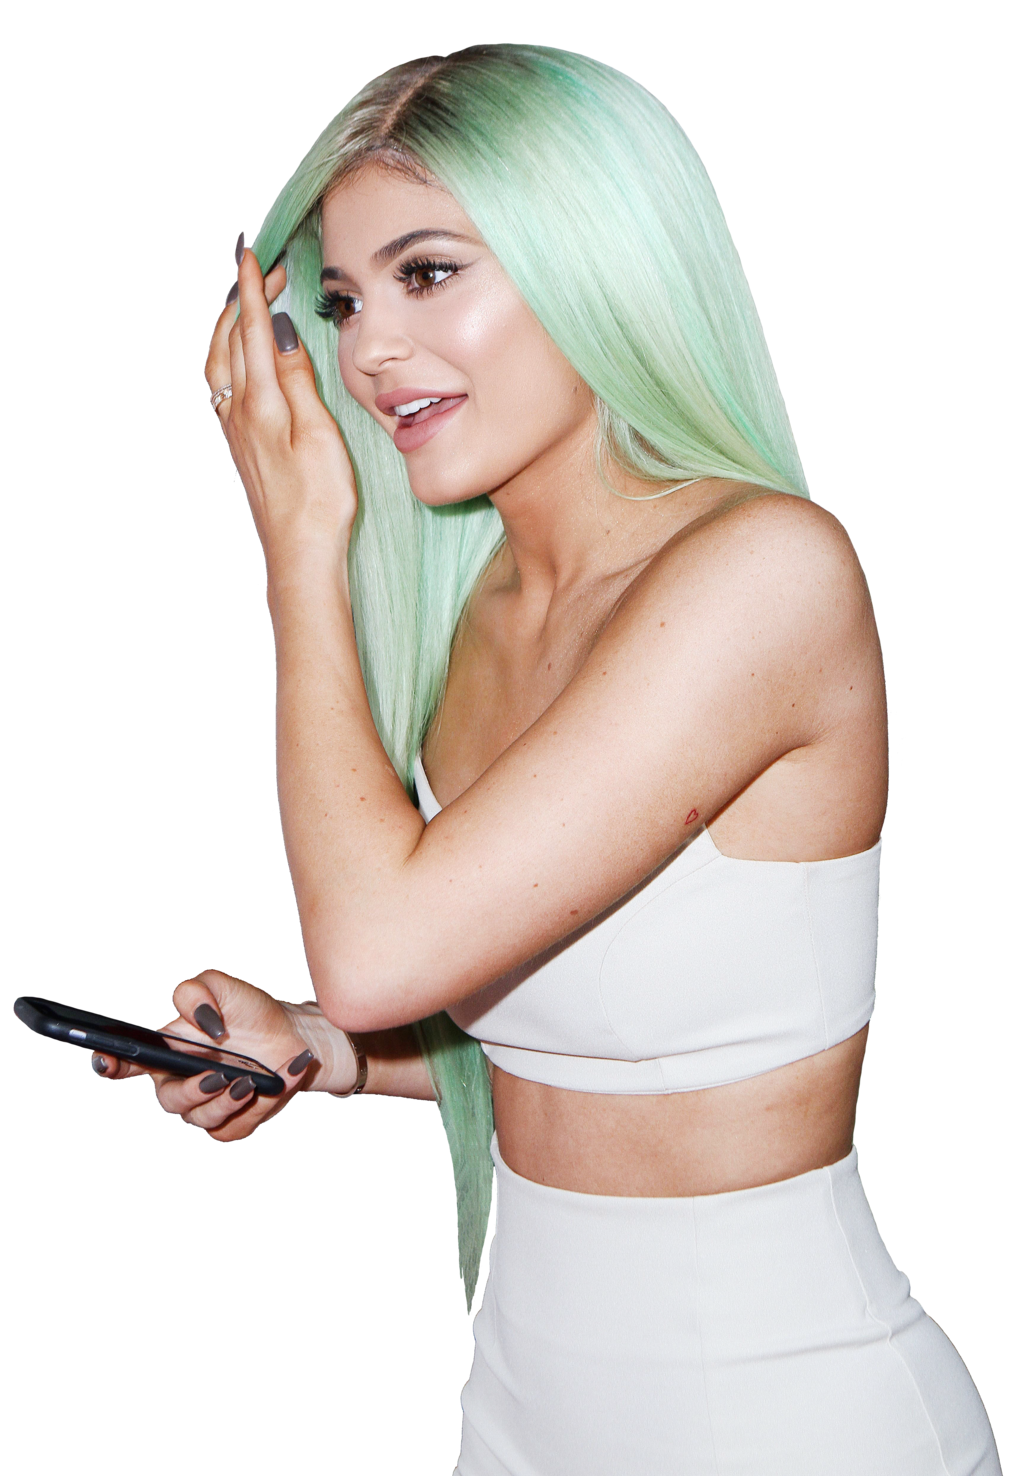 Kylie Jenner Image PNG Image